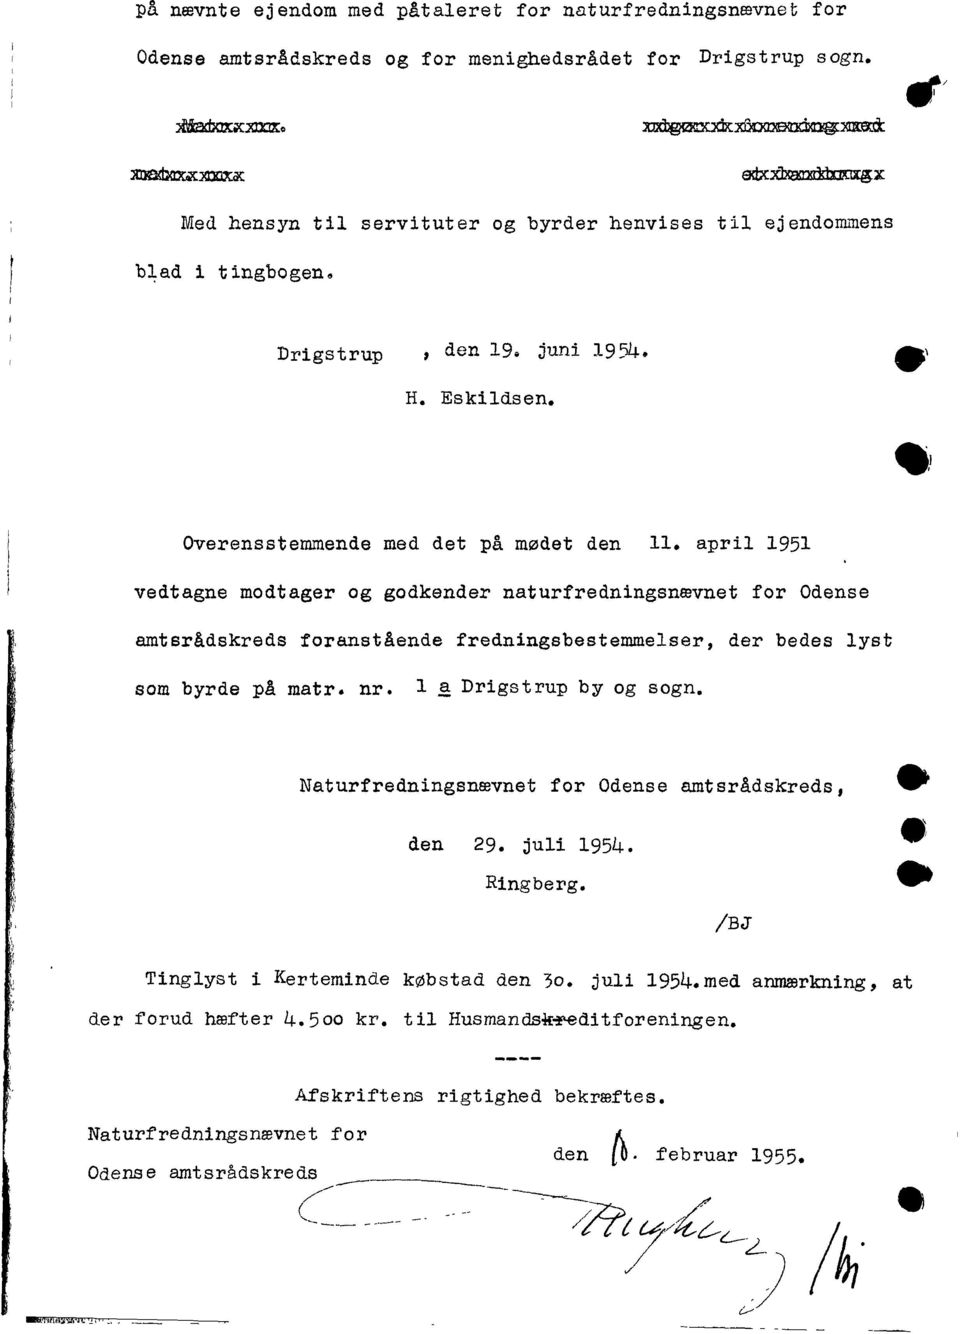 april 1951 vedtagne modtager og godkender naturfredningsnævnet for Odense amtsrådskreds foranstående fredningsbestemmelser, der bedes lyst som byrde på matr. nr. l ~ Drigstrup by og sogn.